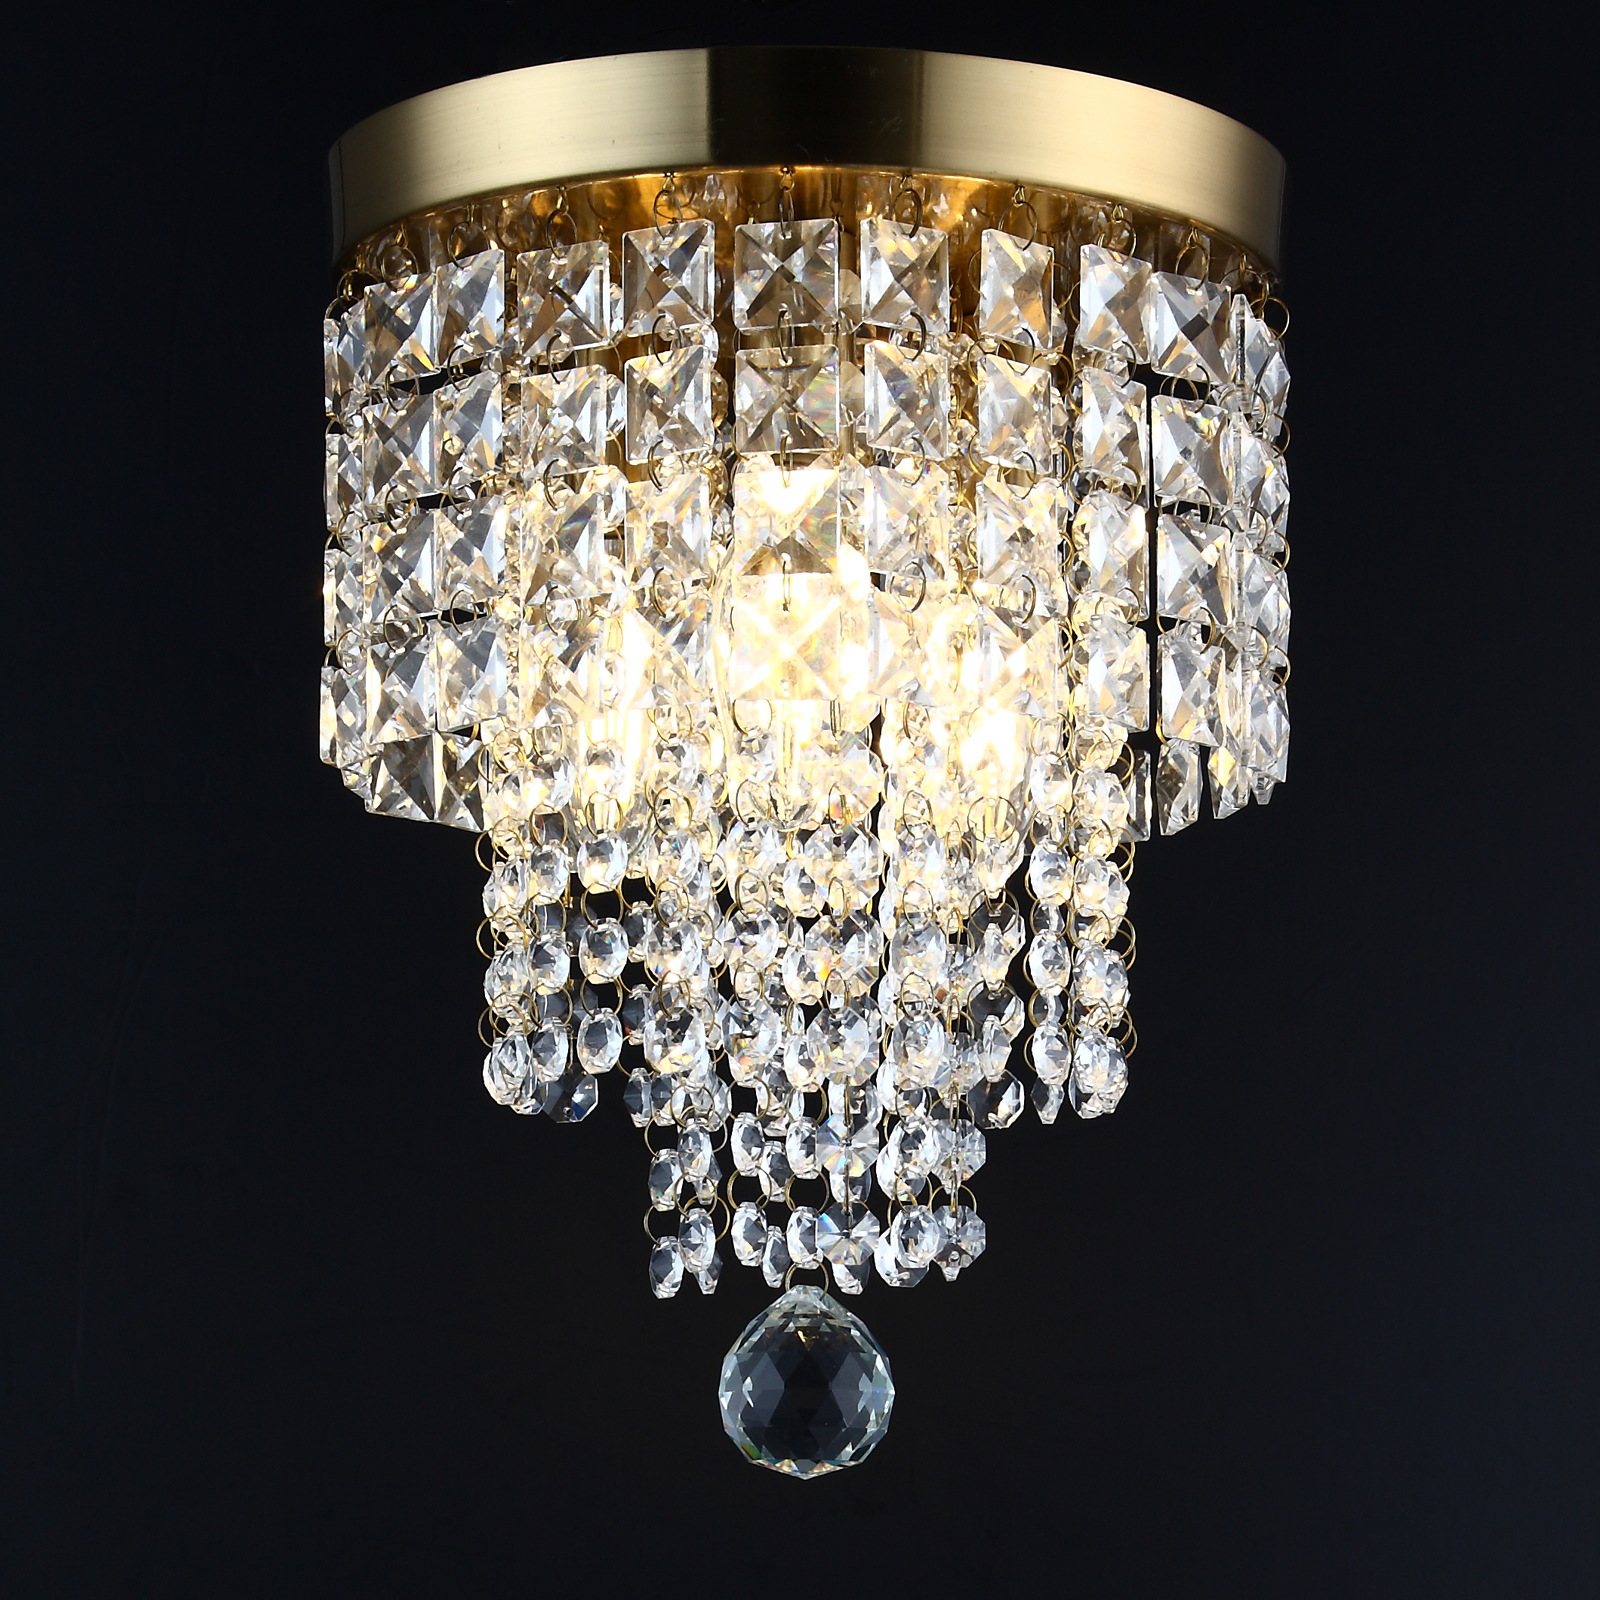 Lampadari a 3 luci in cristallo dorato, lampadari a sospensione a soffitto con montaggio a incasso per camera da letto, soggiorno, sala da pranzo